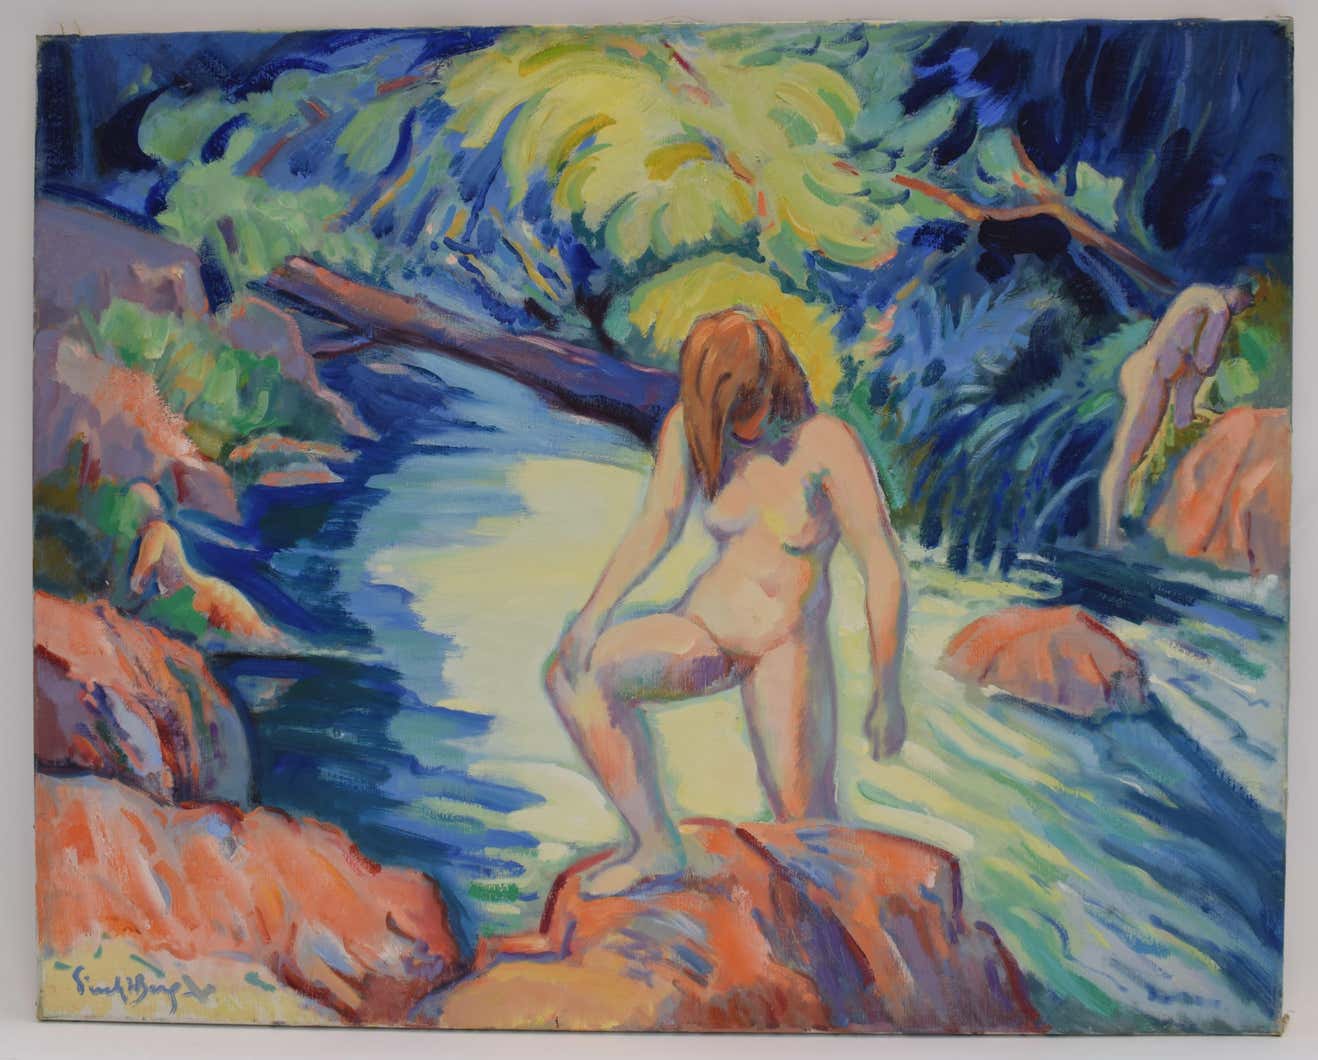 Nude portrait in nature, Freek van den Berg (1918-2000)